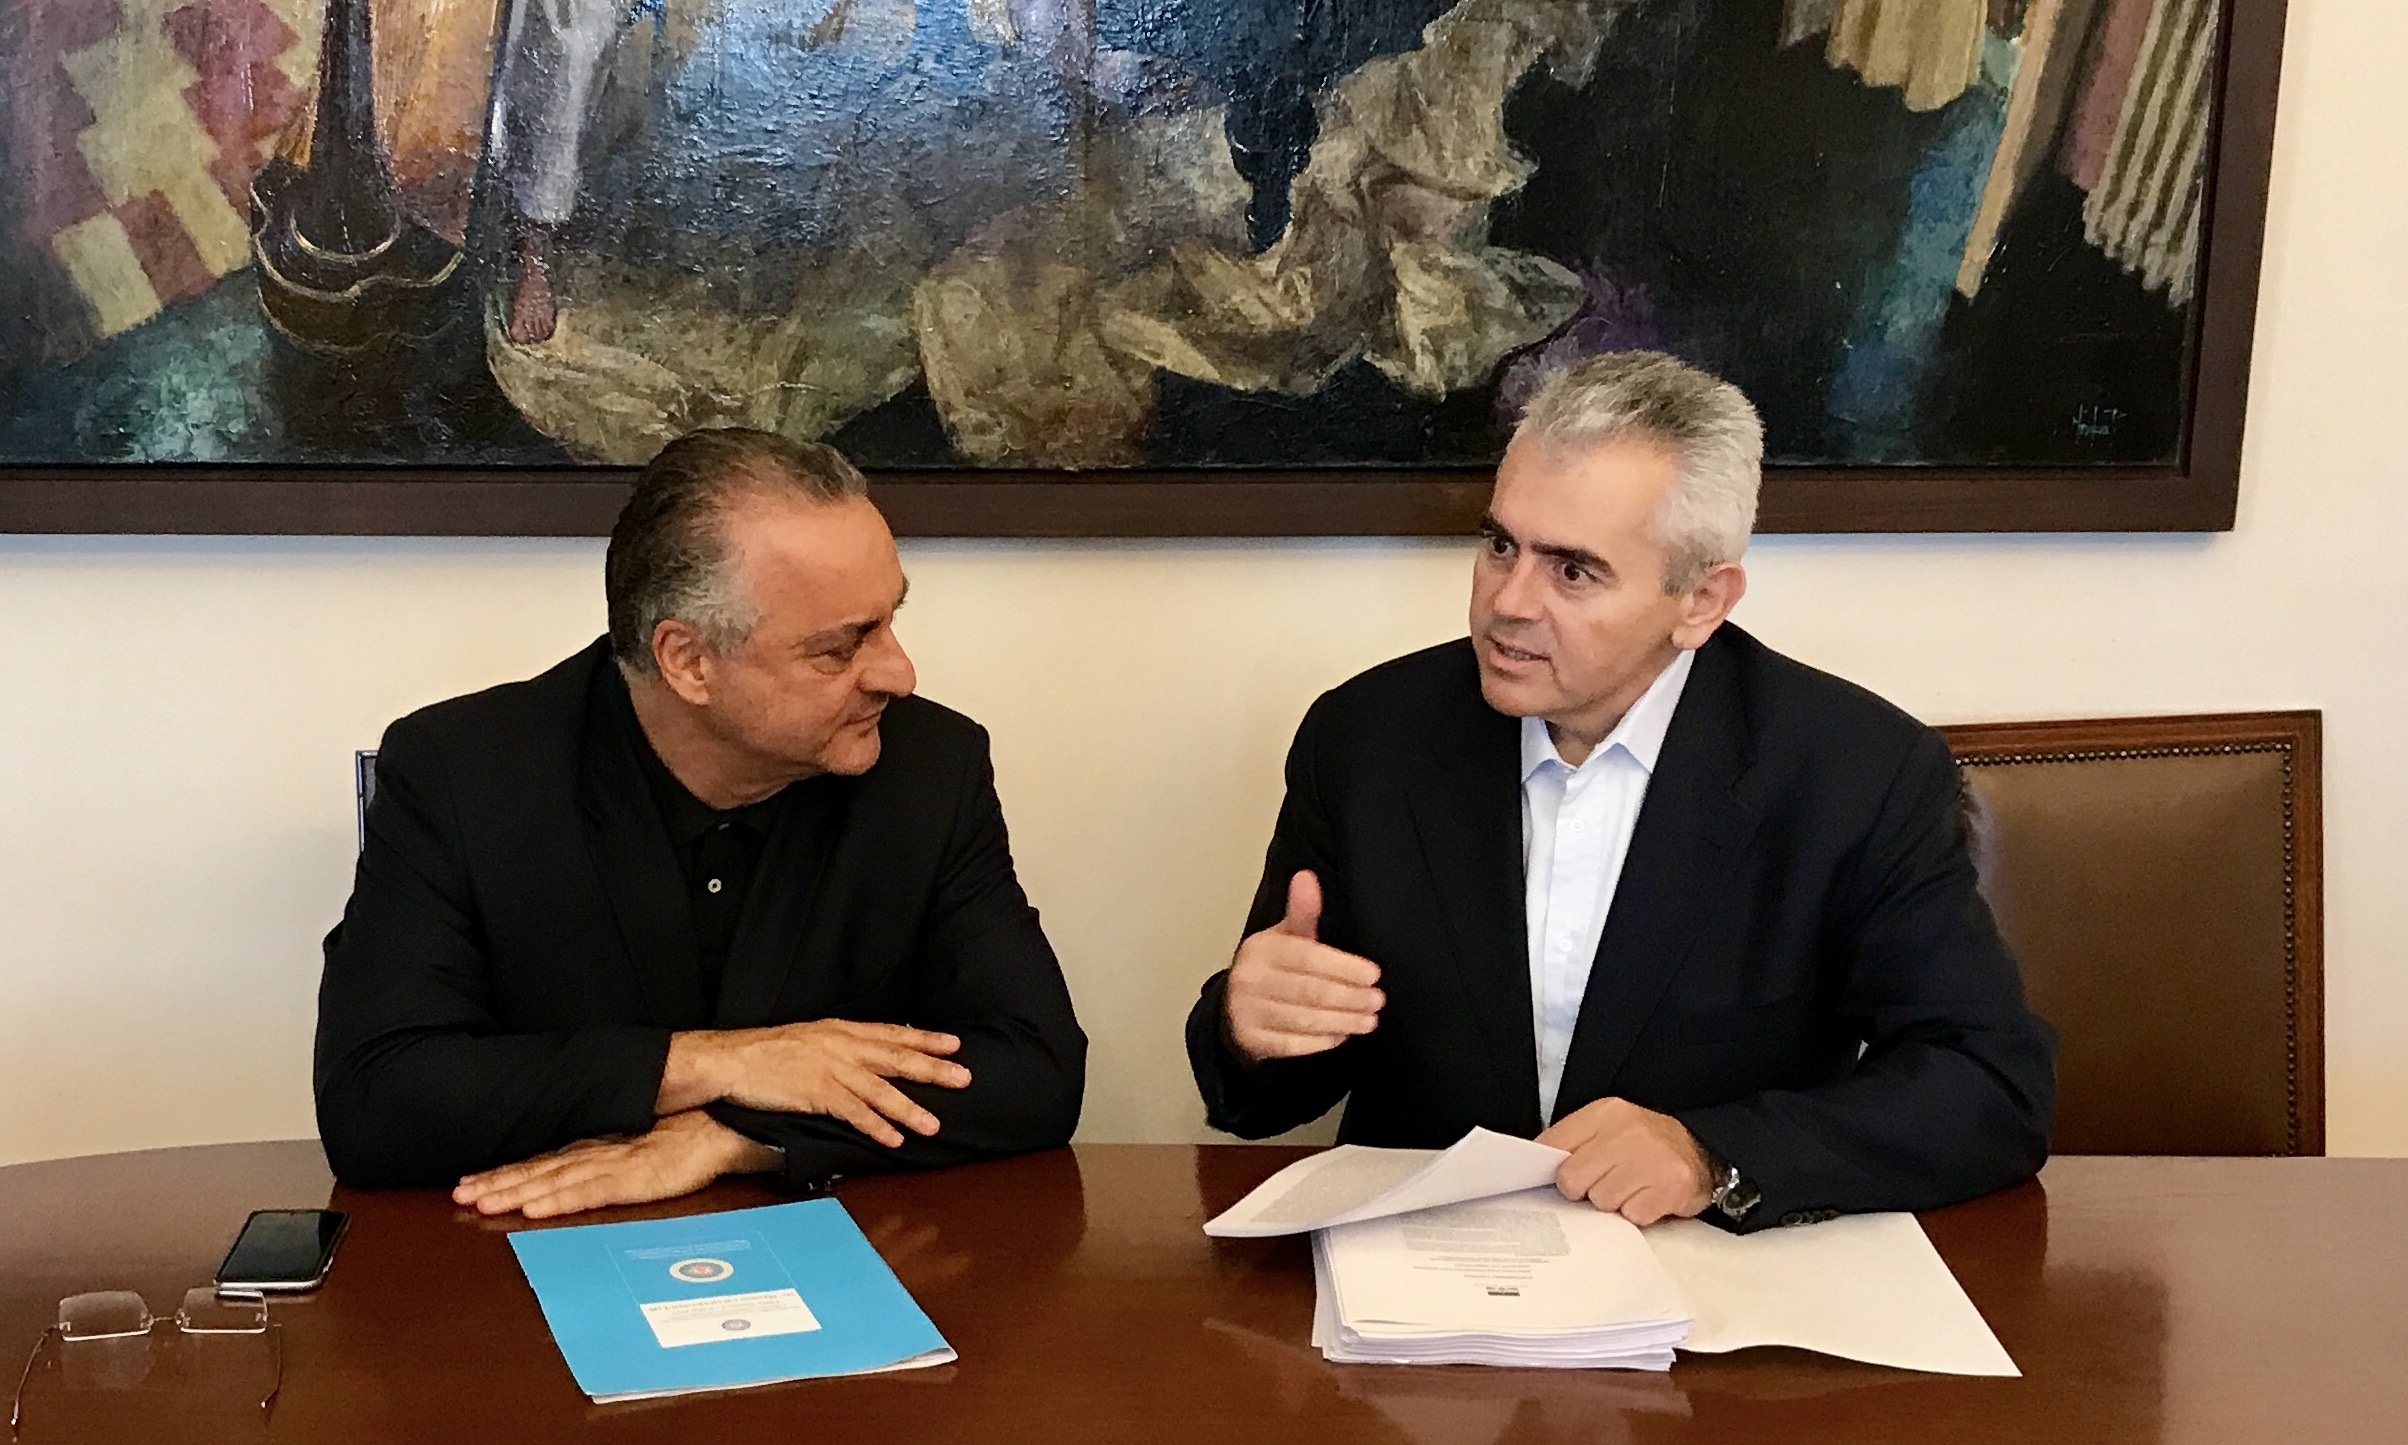 Χαρακόπουλος: Η κυβέρνηση να αναλάβει άμεσα πρωτοβουλίες για τσίπουρο-τσικουδιά!